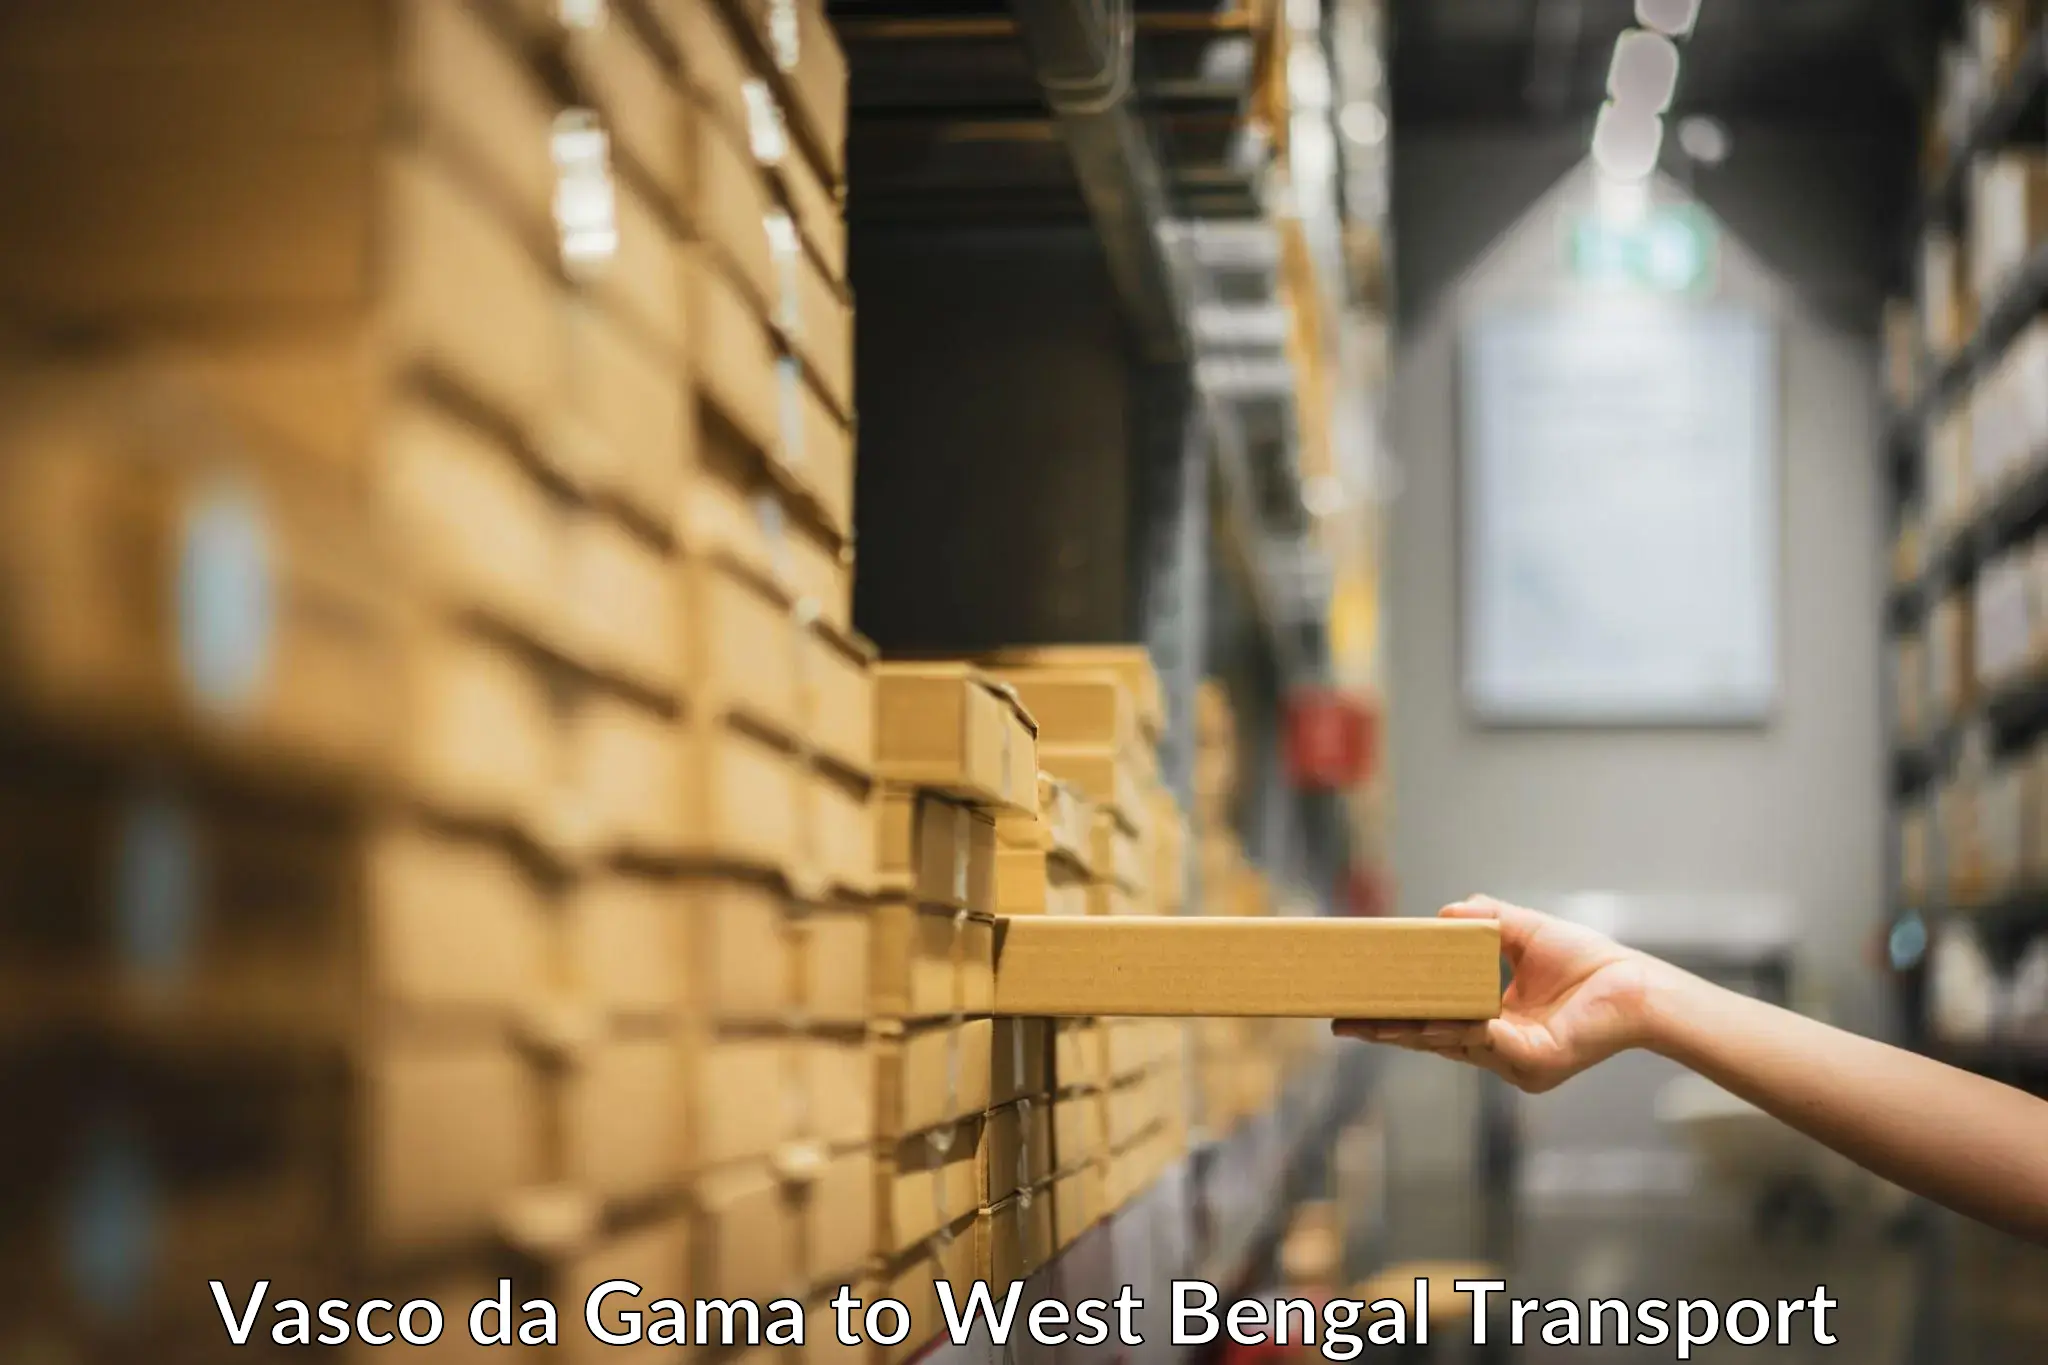 Domestic goods transportation services Vasco da Gama to Kolkata